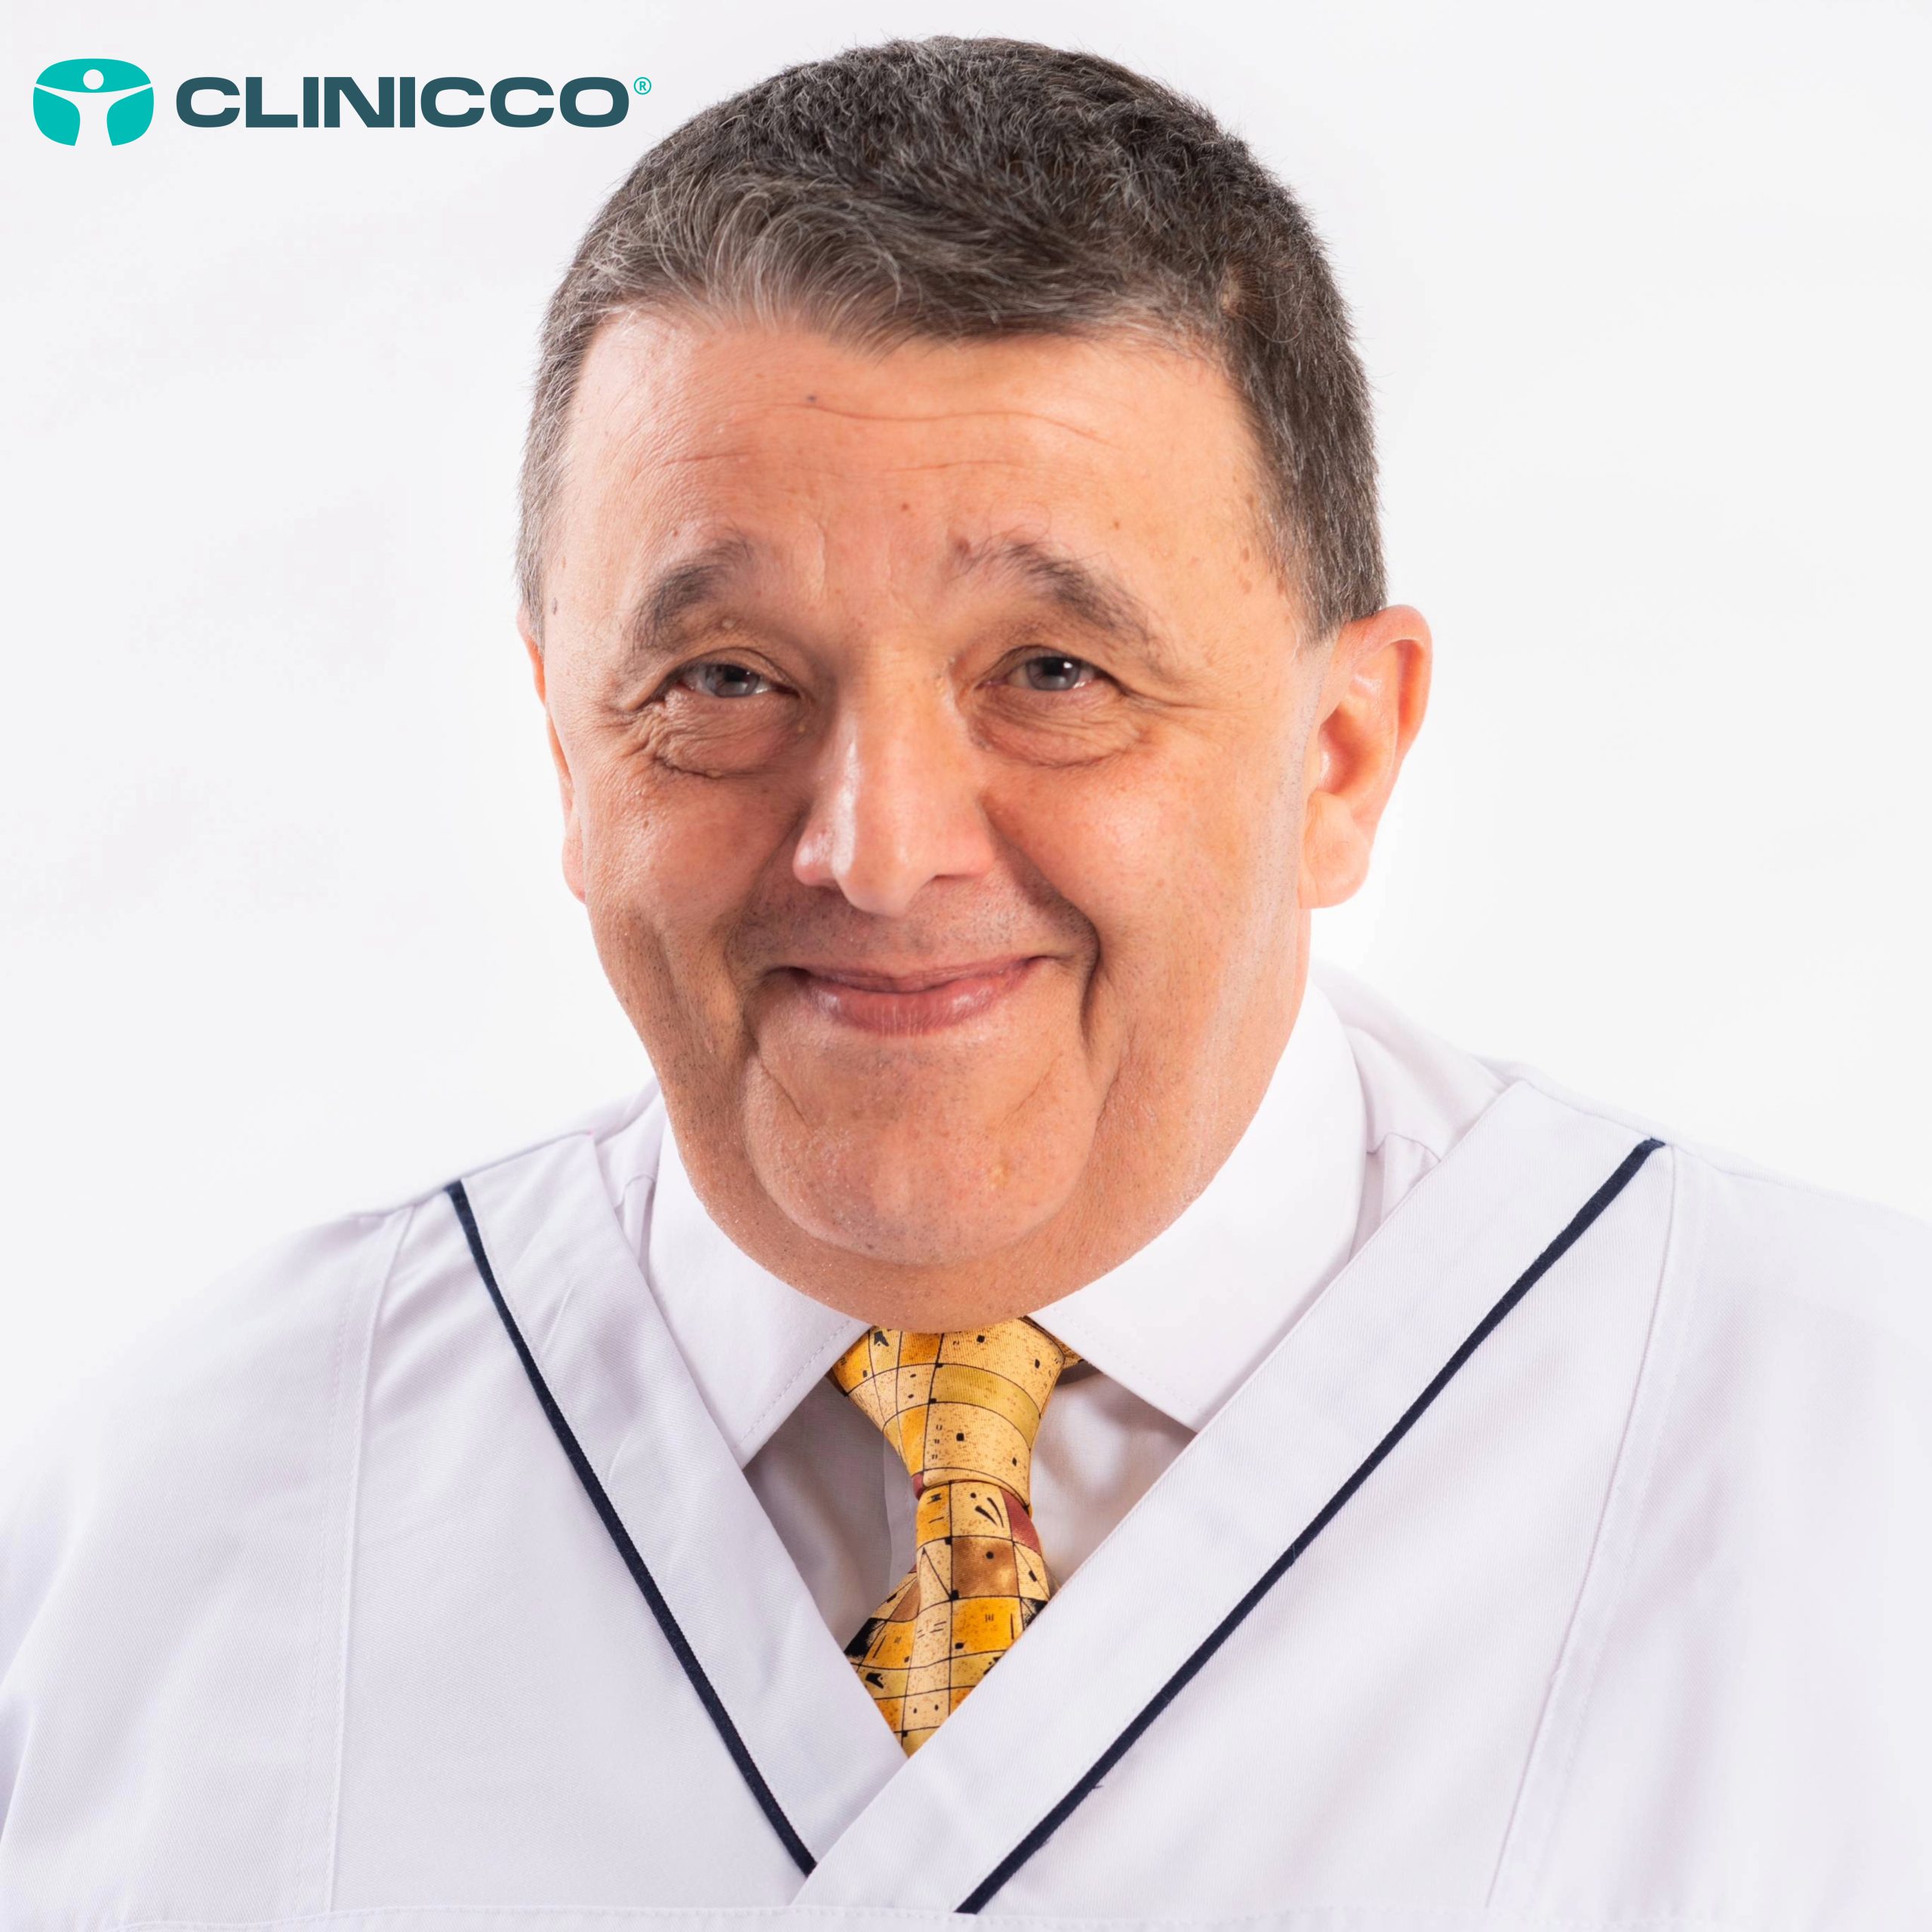 Ortopedie: Domnul Prof. Dr. Cristian Stoica începe colaborarea cu CLINICCO din data de Sâmbătă 30 Martie